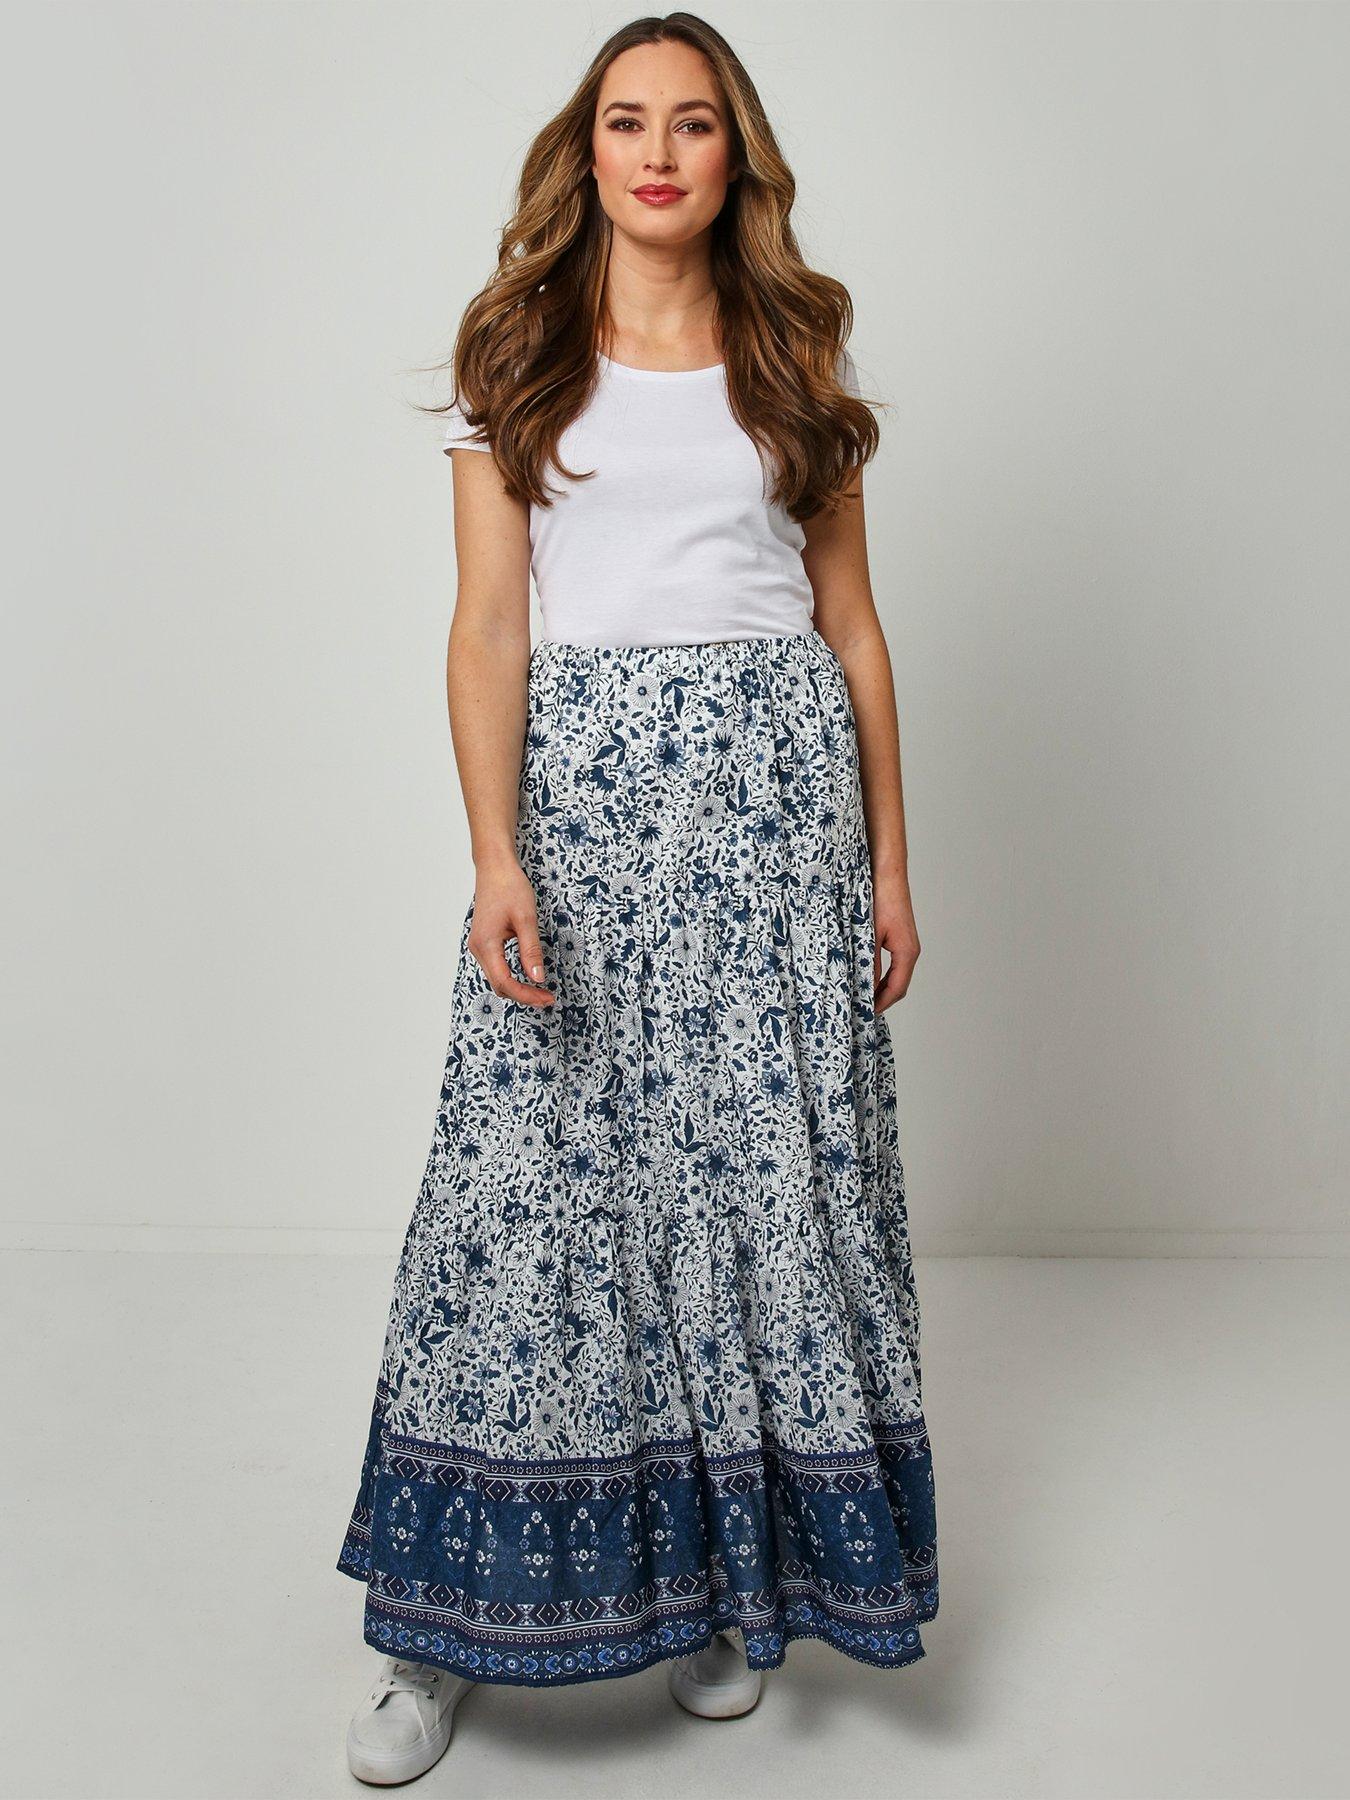  Gorgeous Boho Skirt - White/Blue